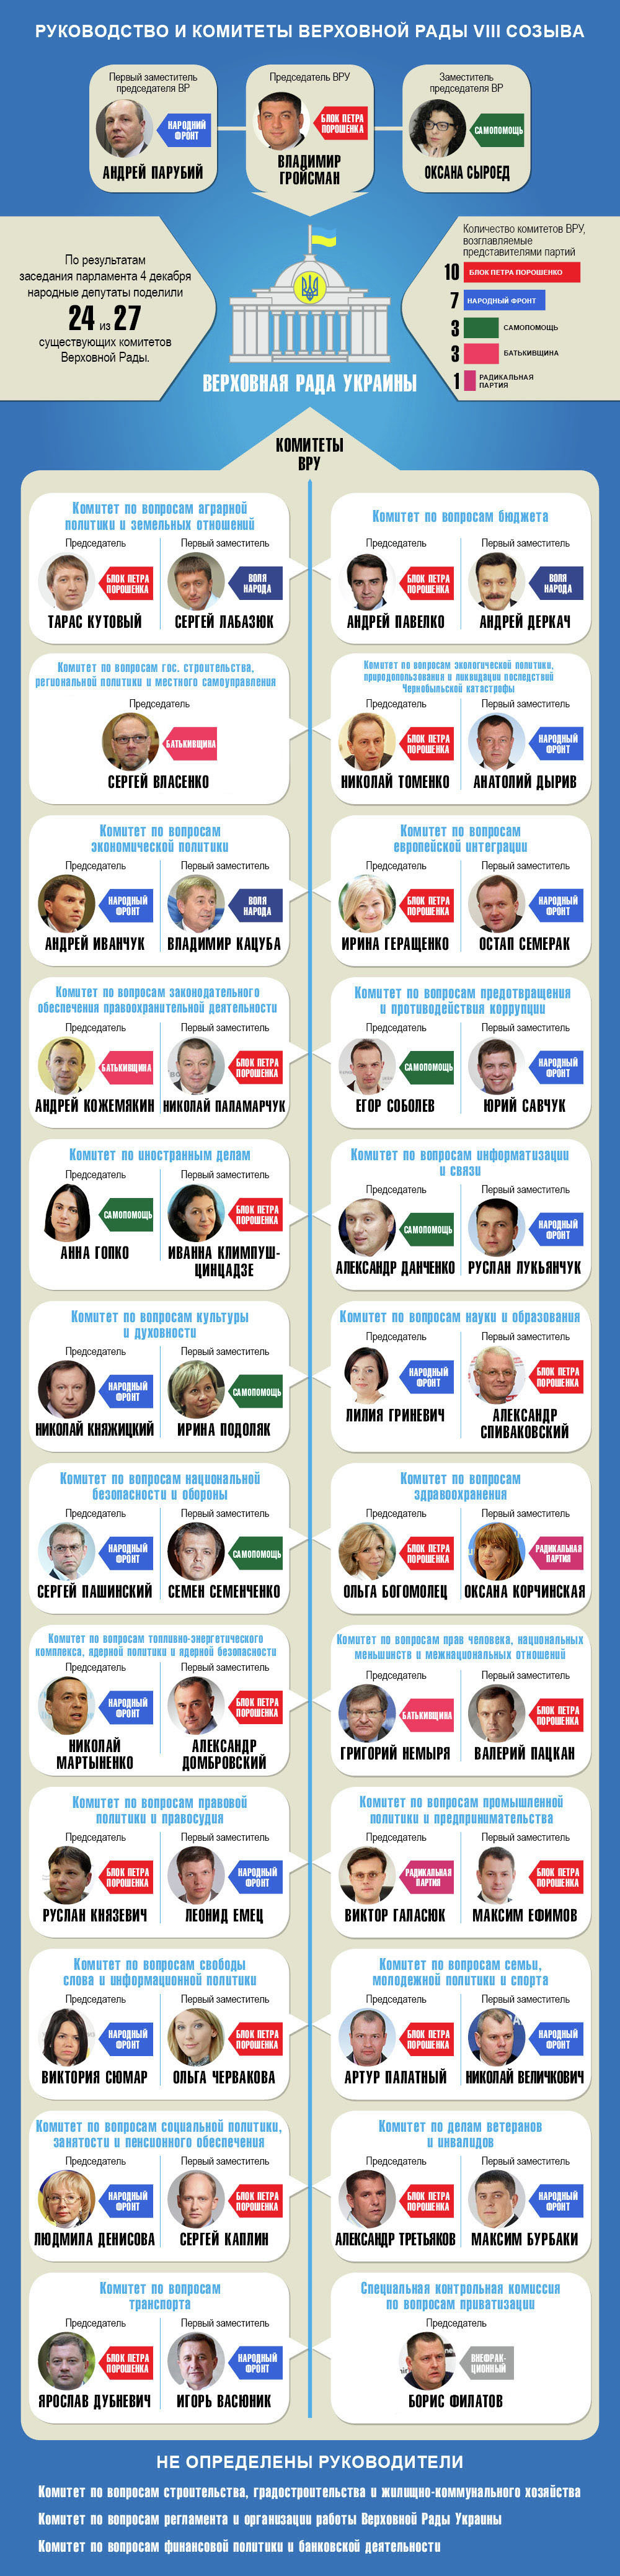 Руководство и комитеты Верховной Рады 8 созыва. Инфографика